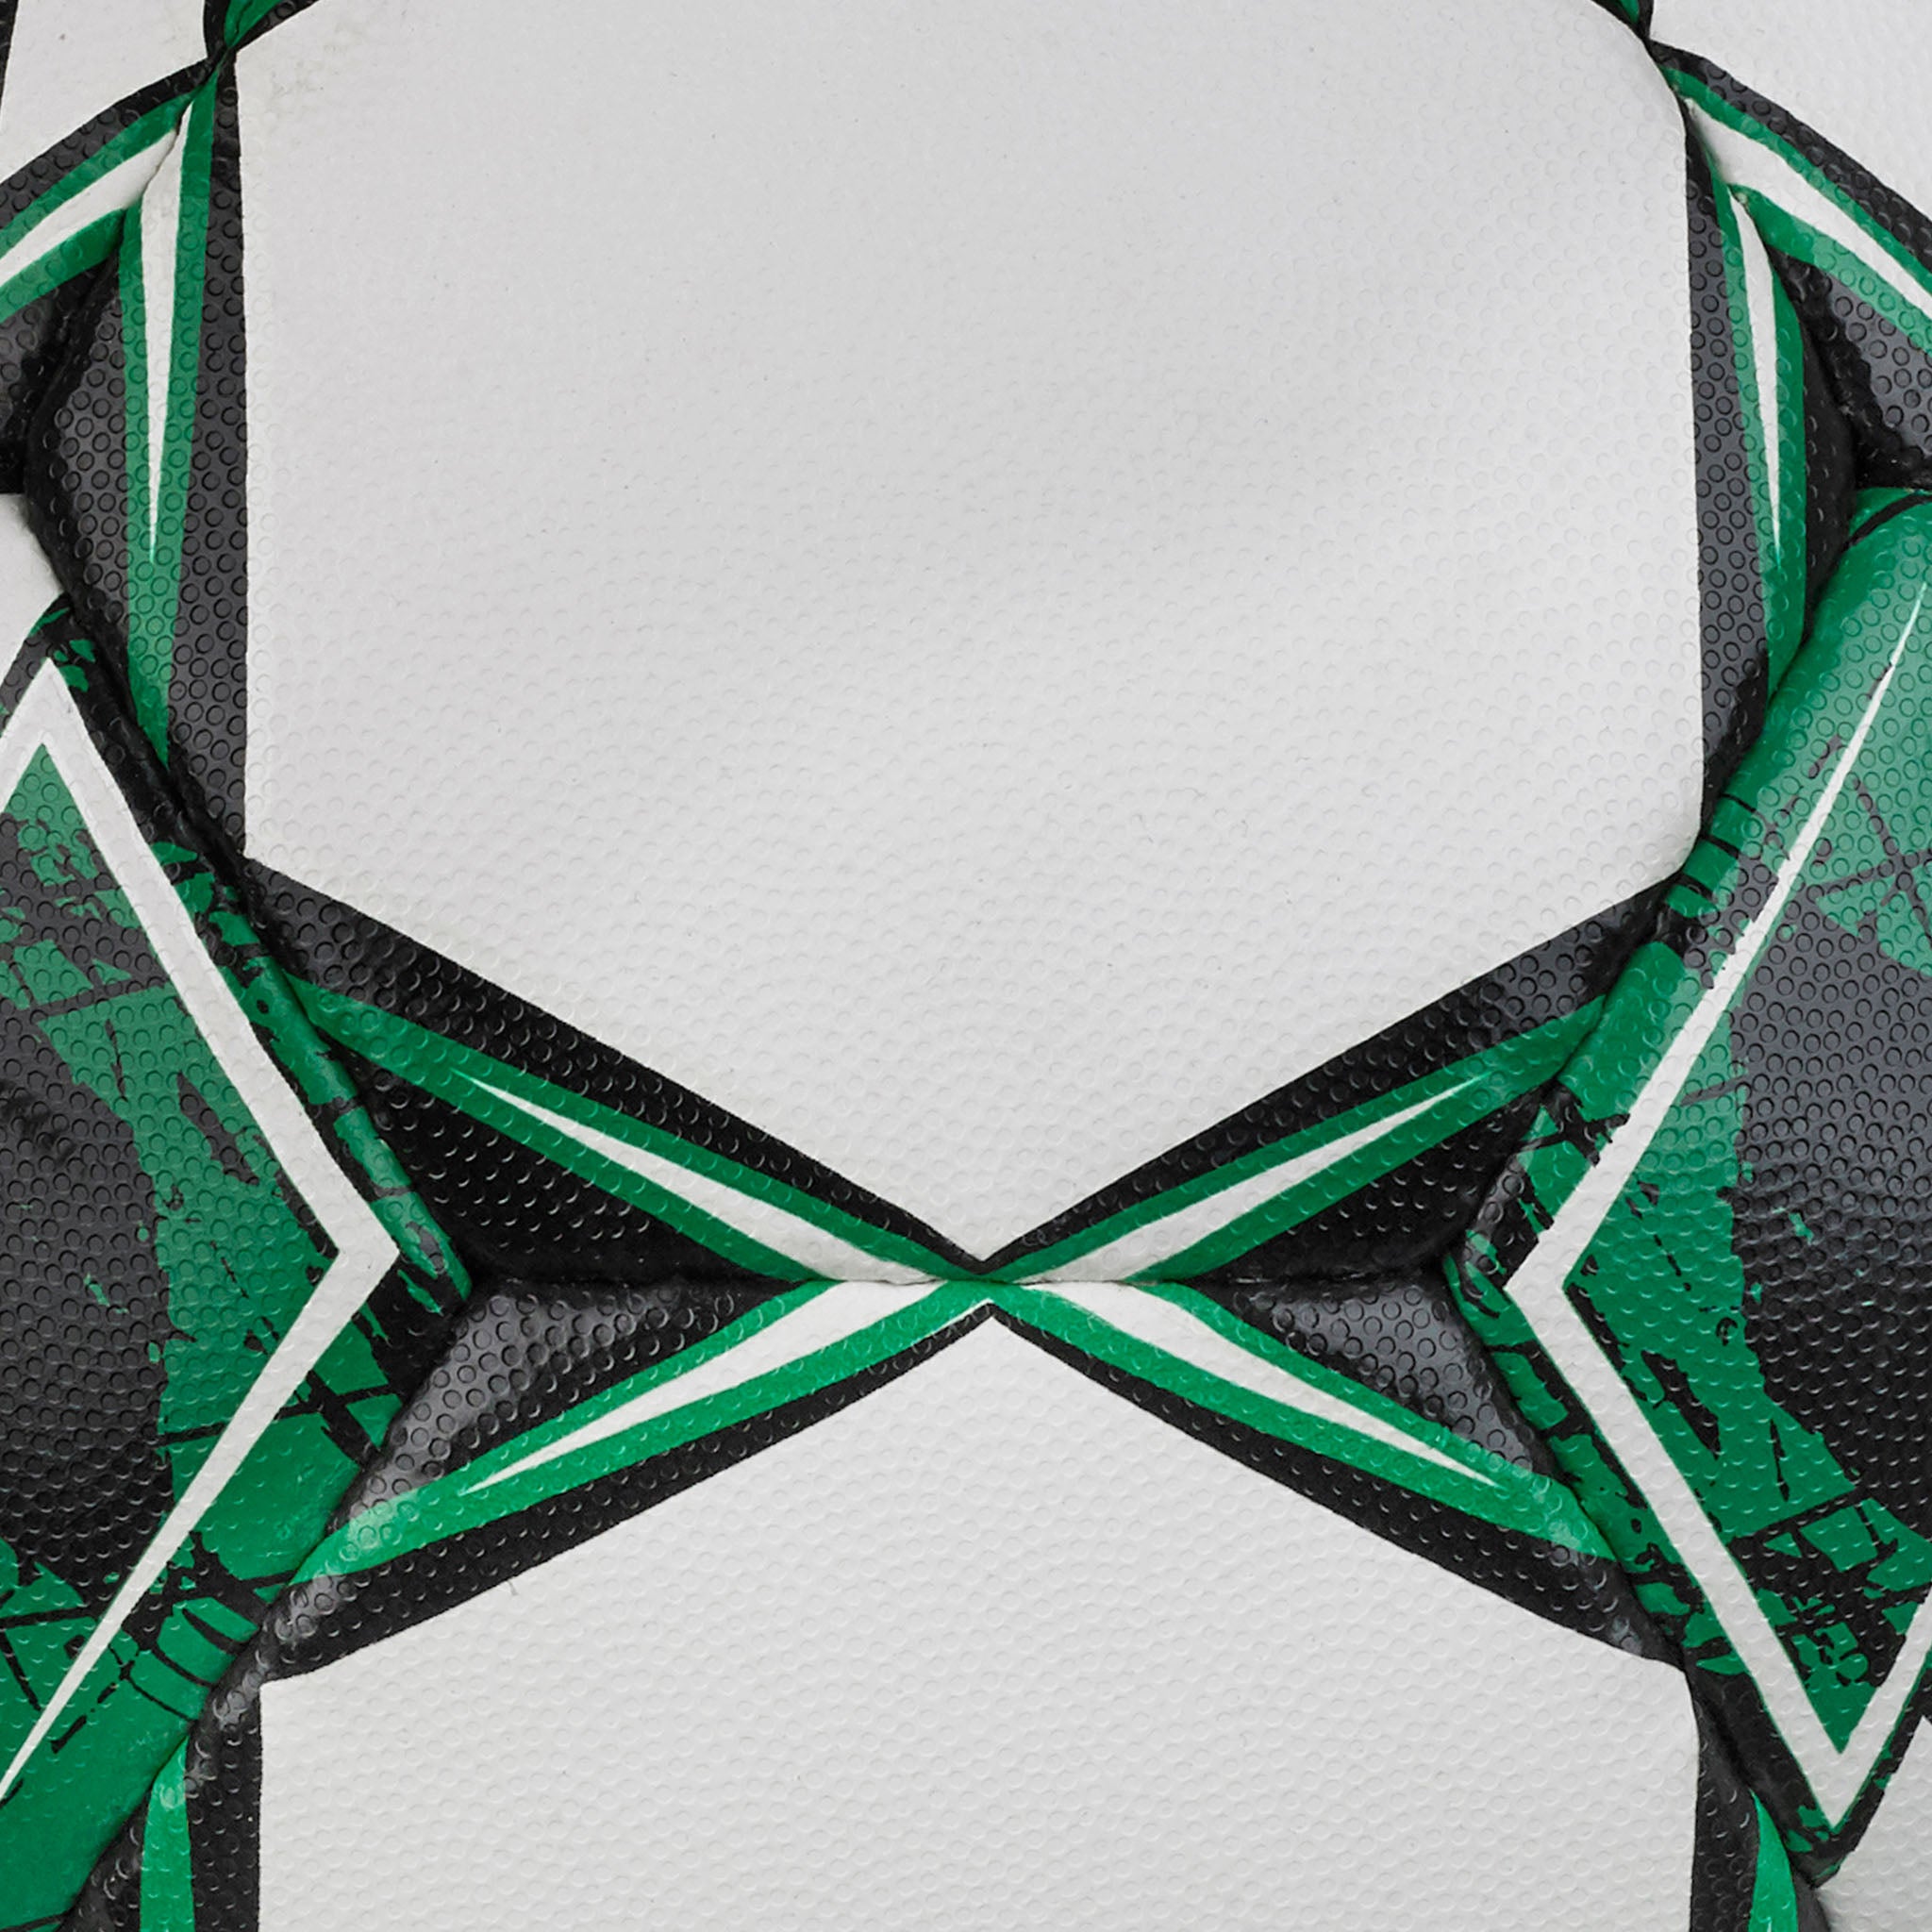 Fodbold - Goalie Reflex #farve_hvid/grøn